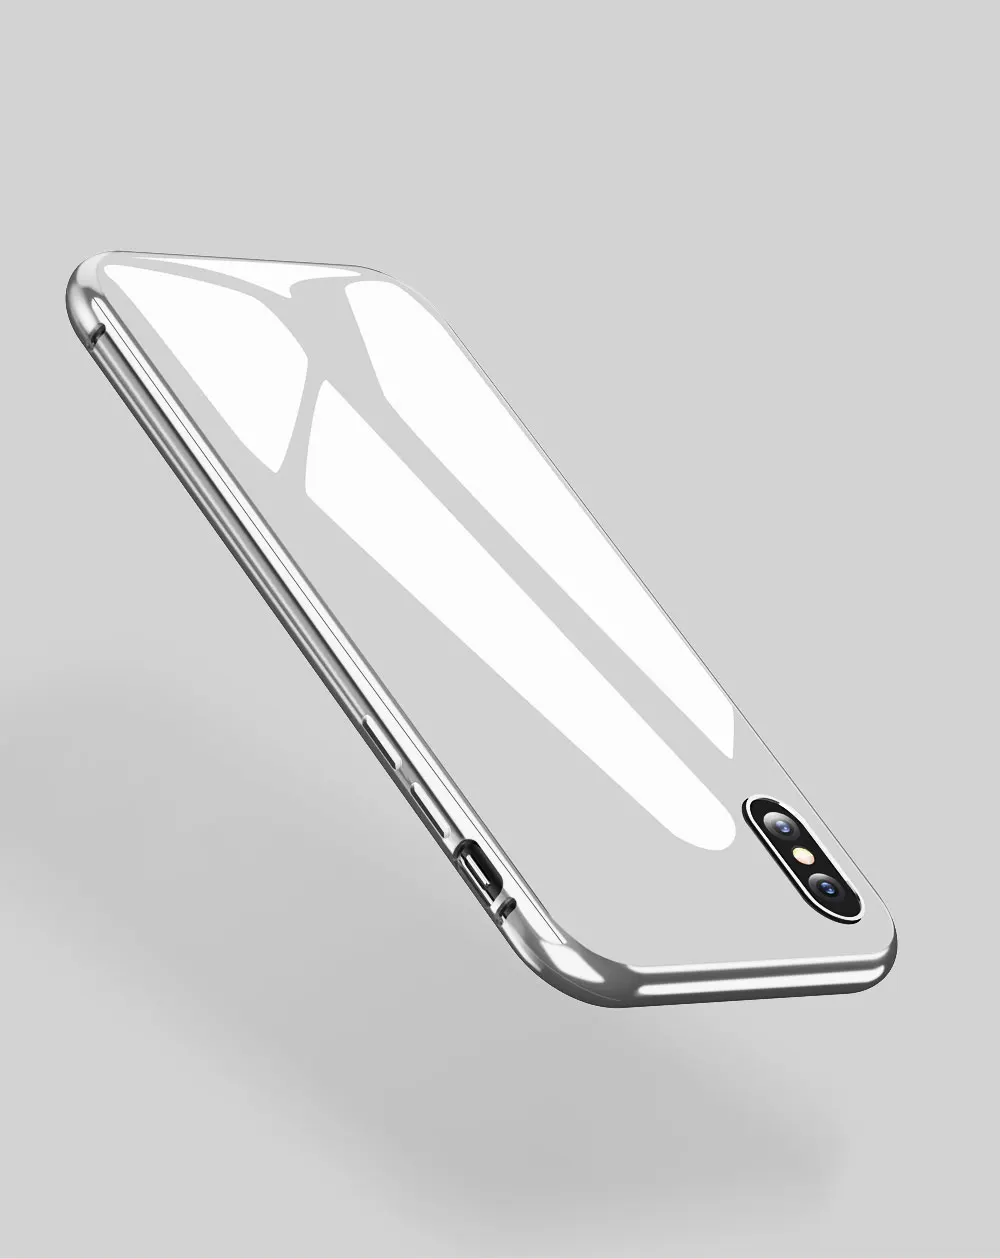 Essager ультра Магнитный адсорбционный чехол для iPhone X 8 7 6 6S Plus 360 градусов полный корпус магнит чехол закаленное стекло+ PC крышка